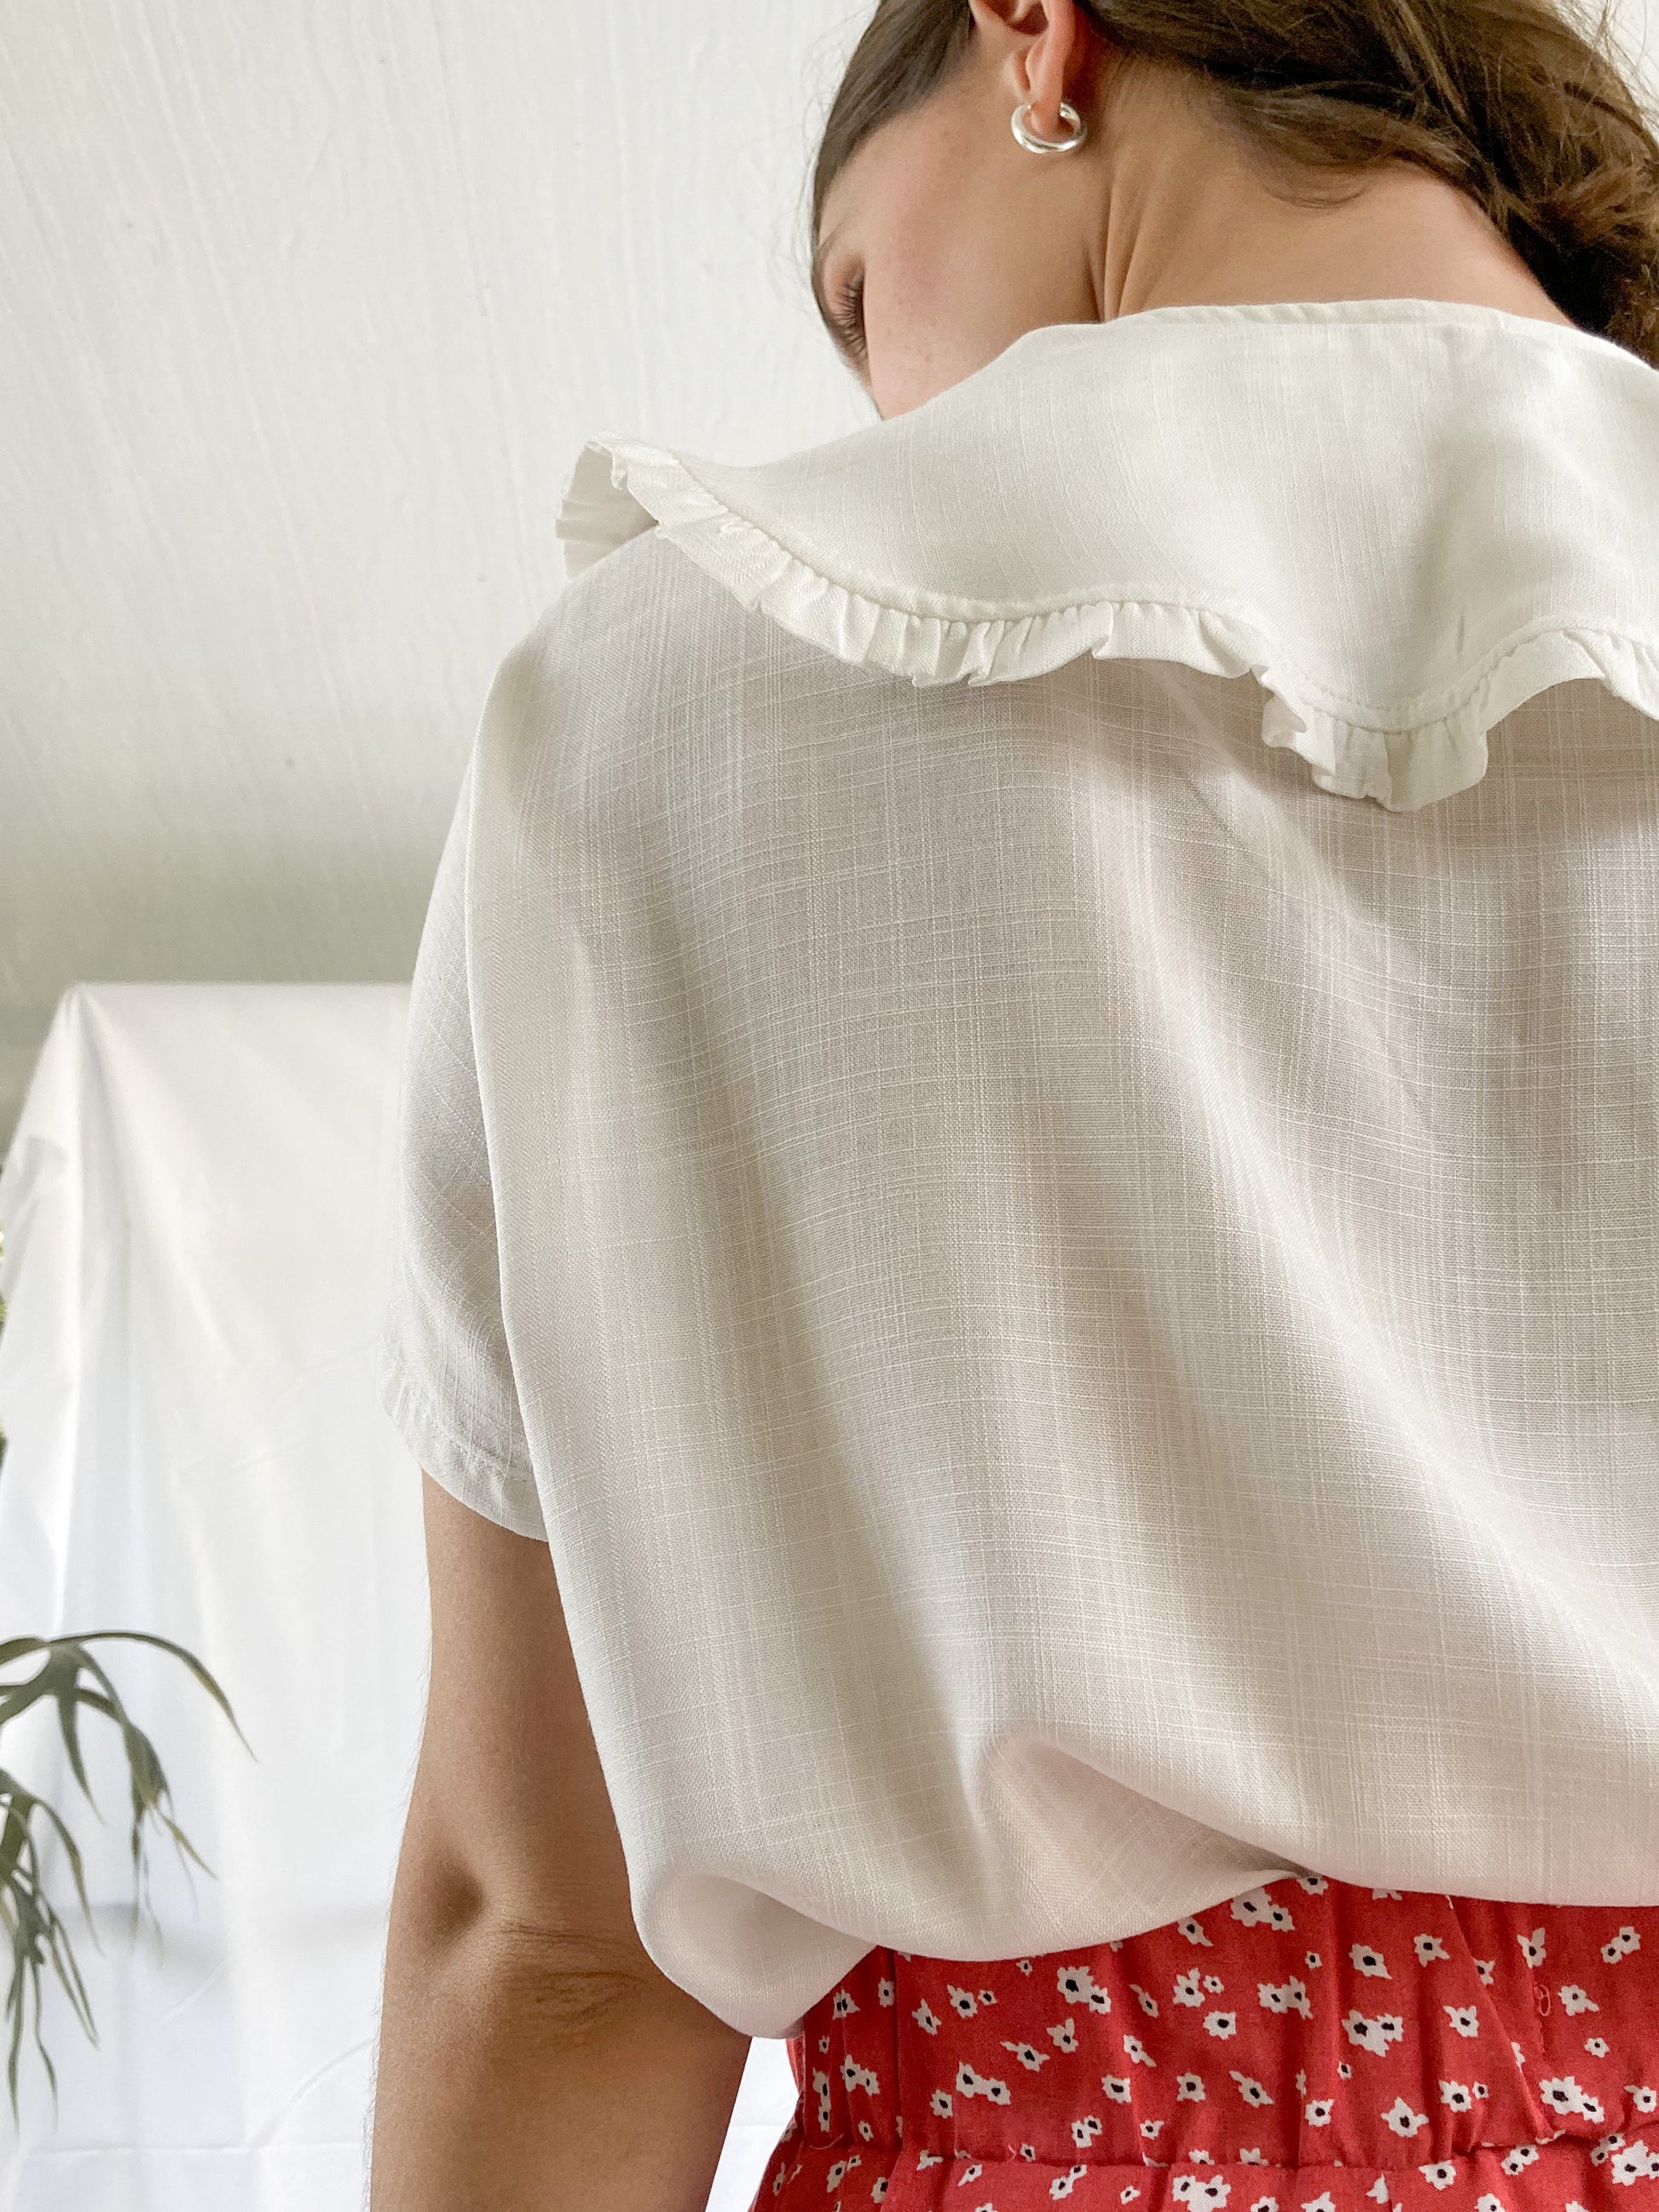 Camisa cuello triangular con bolero y botones. hecha por mujeres en Colombia.  BLANCO  Tela CHALIS